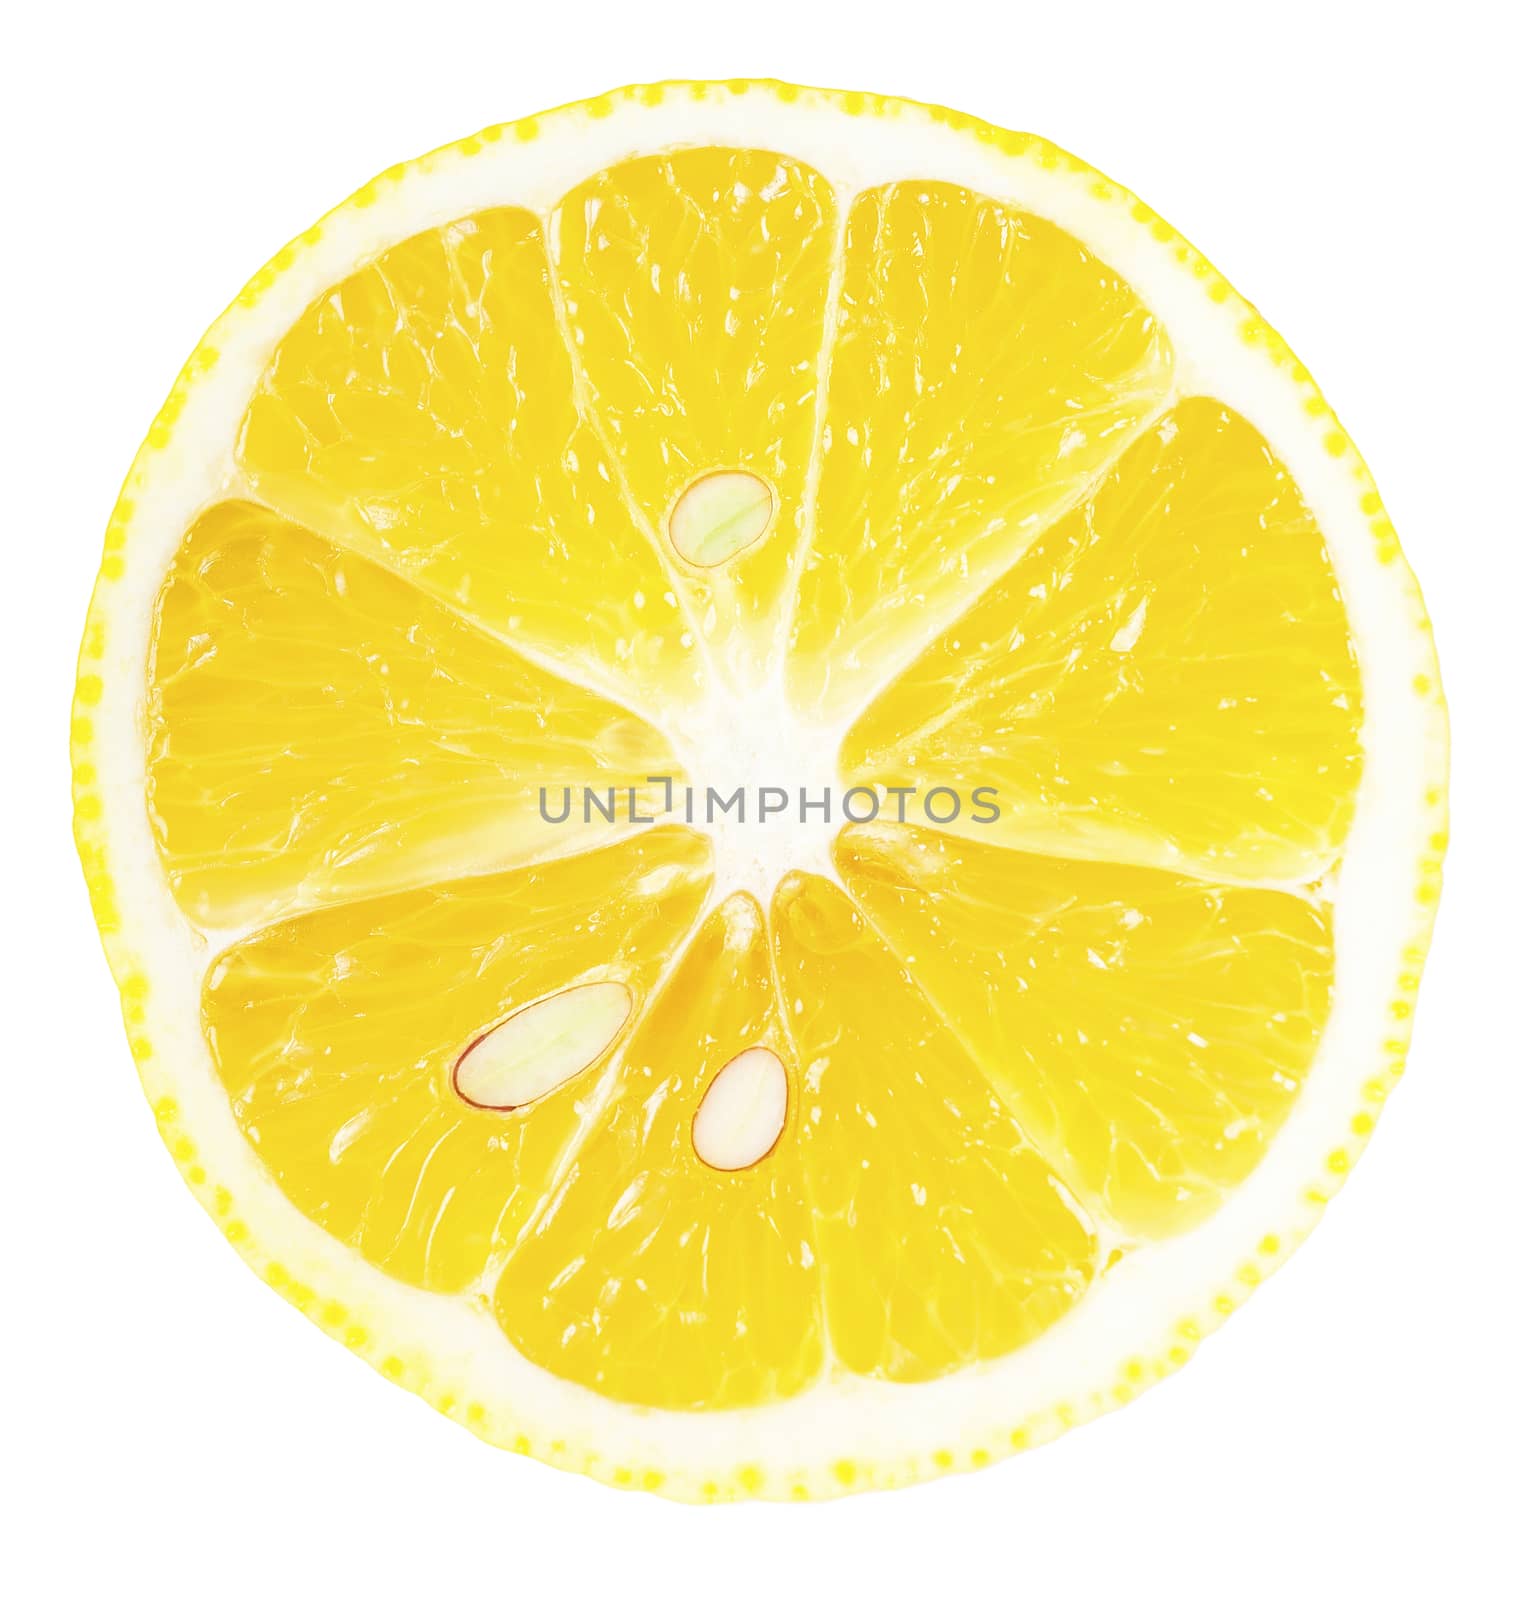 ripe lemon slice isolated on white background